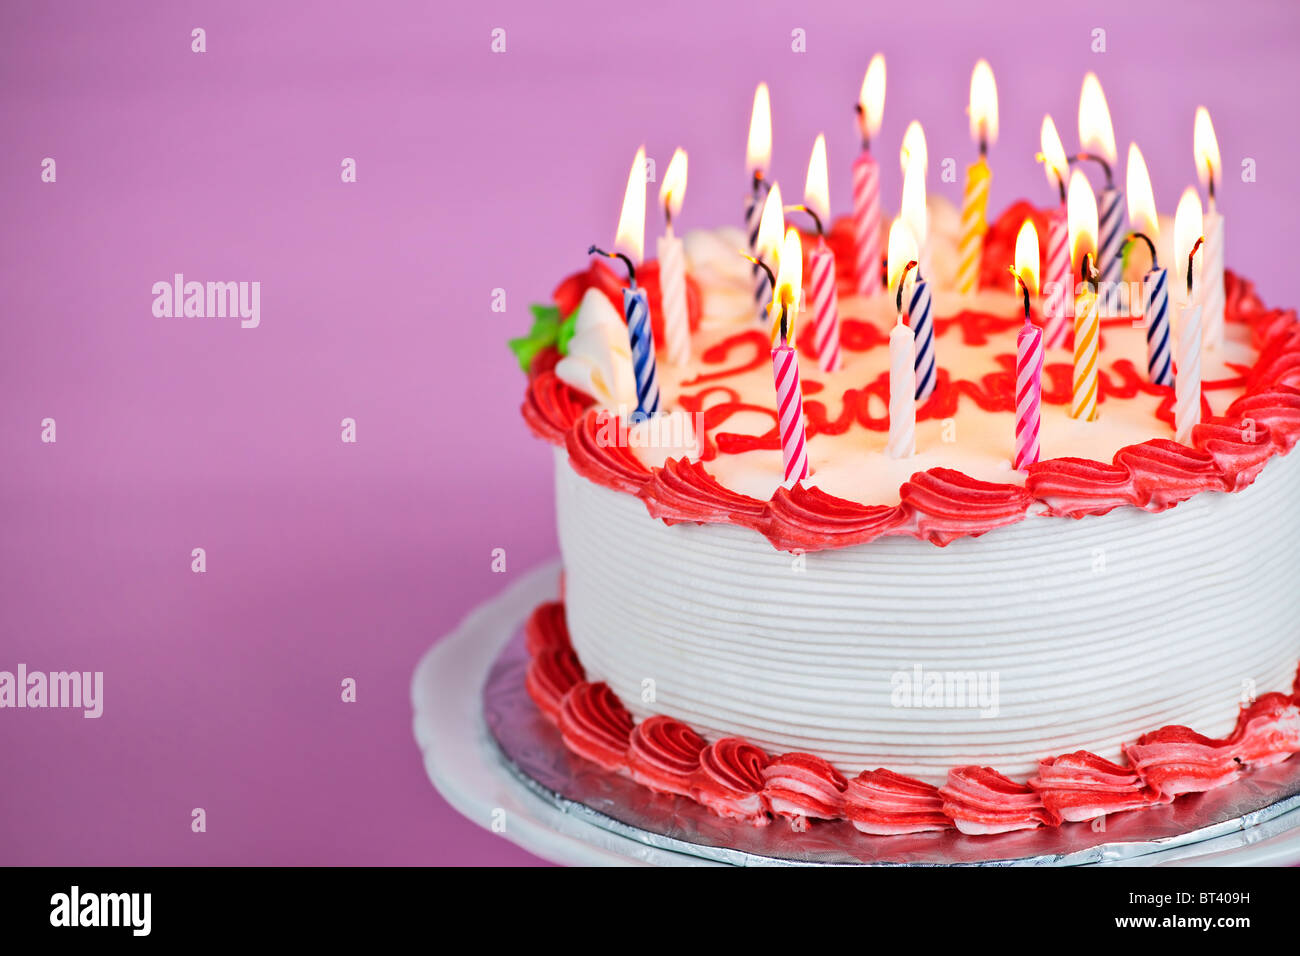 Geburtstagstorte mit brennenden Kerzen auf einem Teller auf rosa Hintergrund Stockfoto